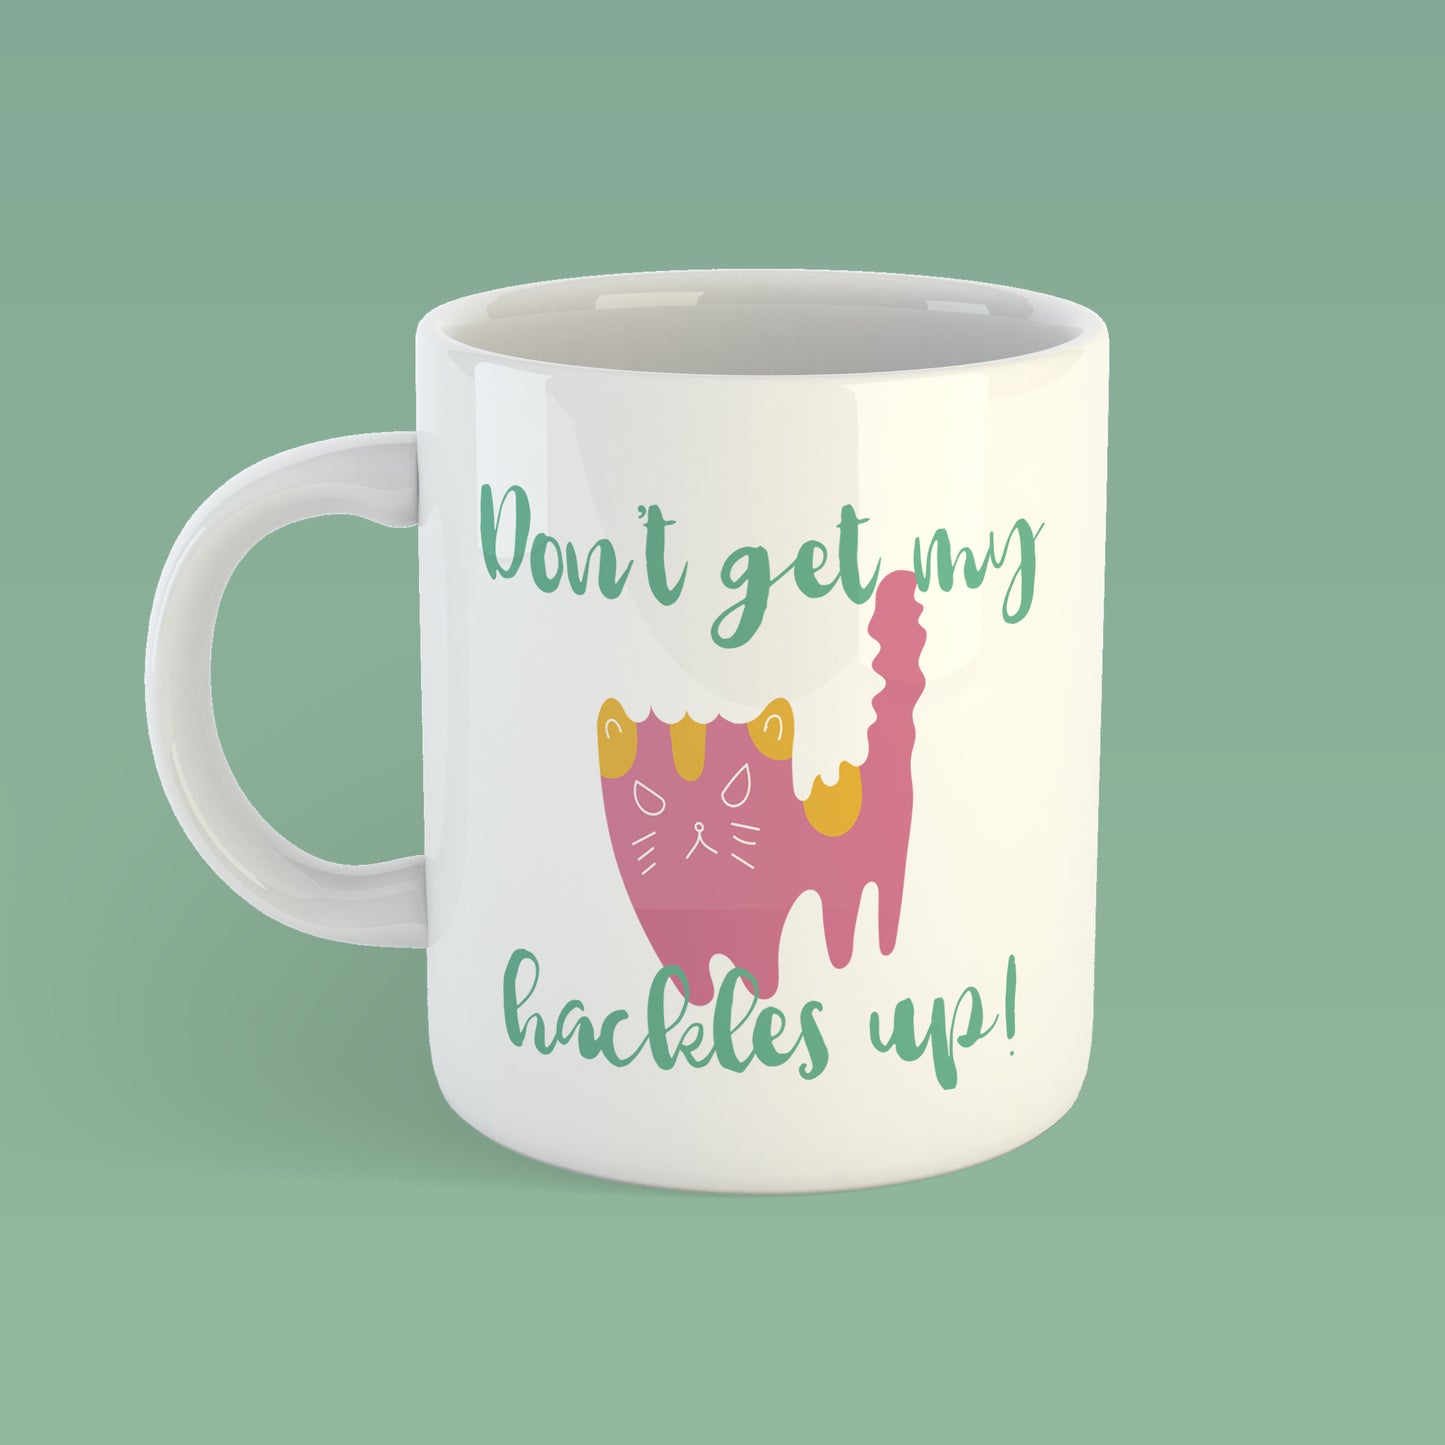 Don't get my hackles up | Ceramic mug